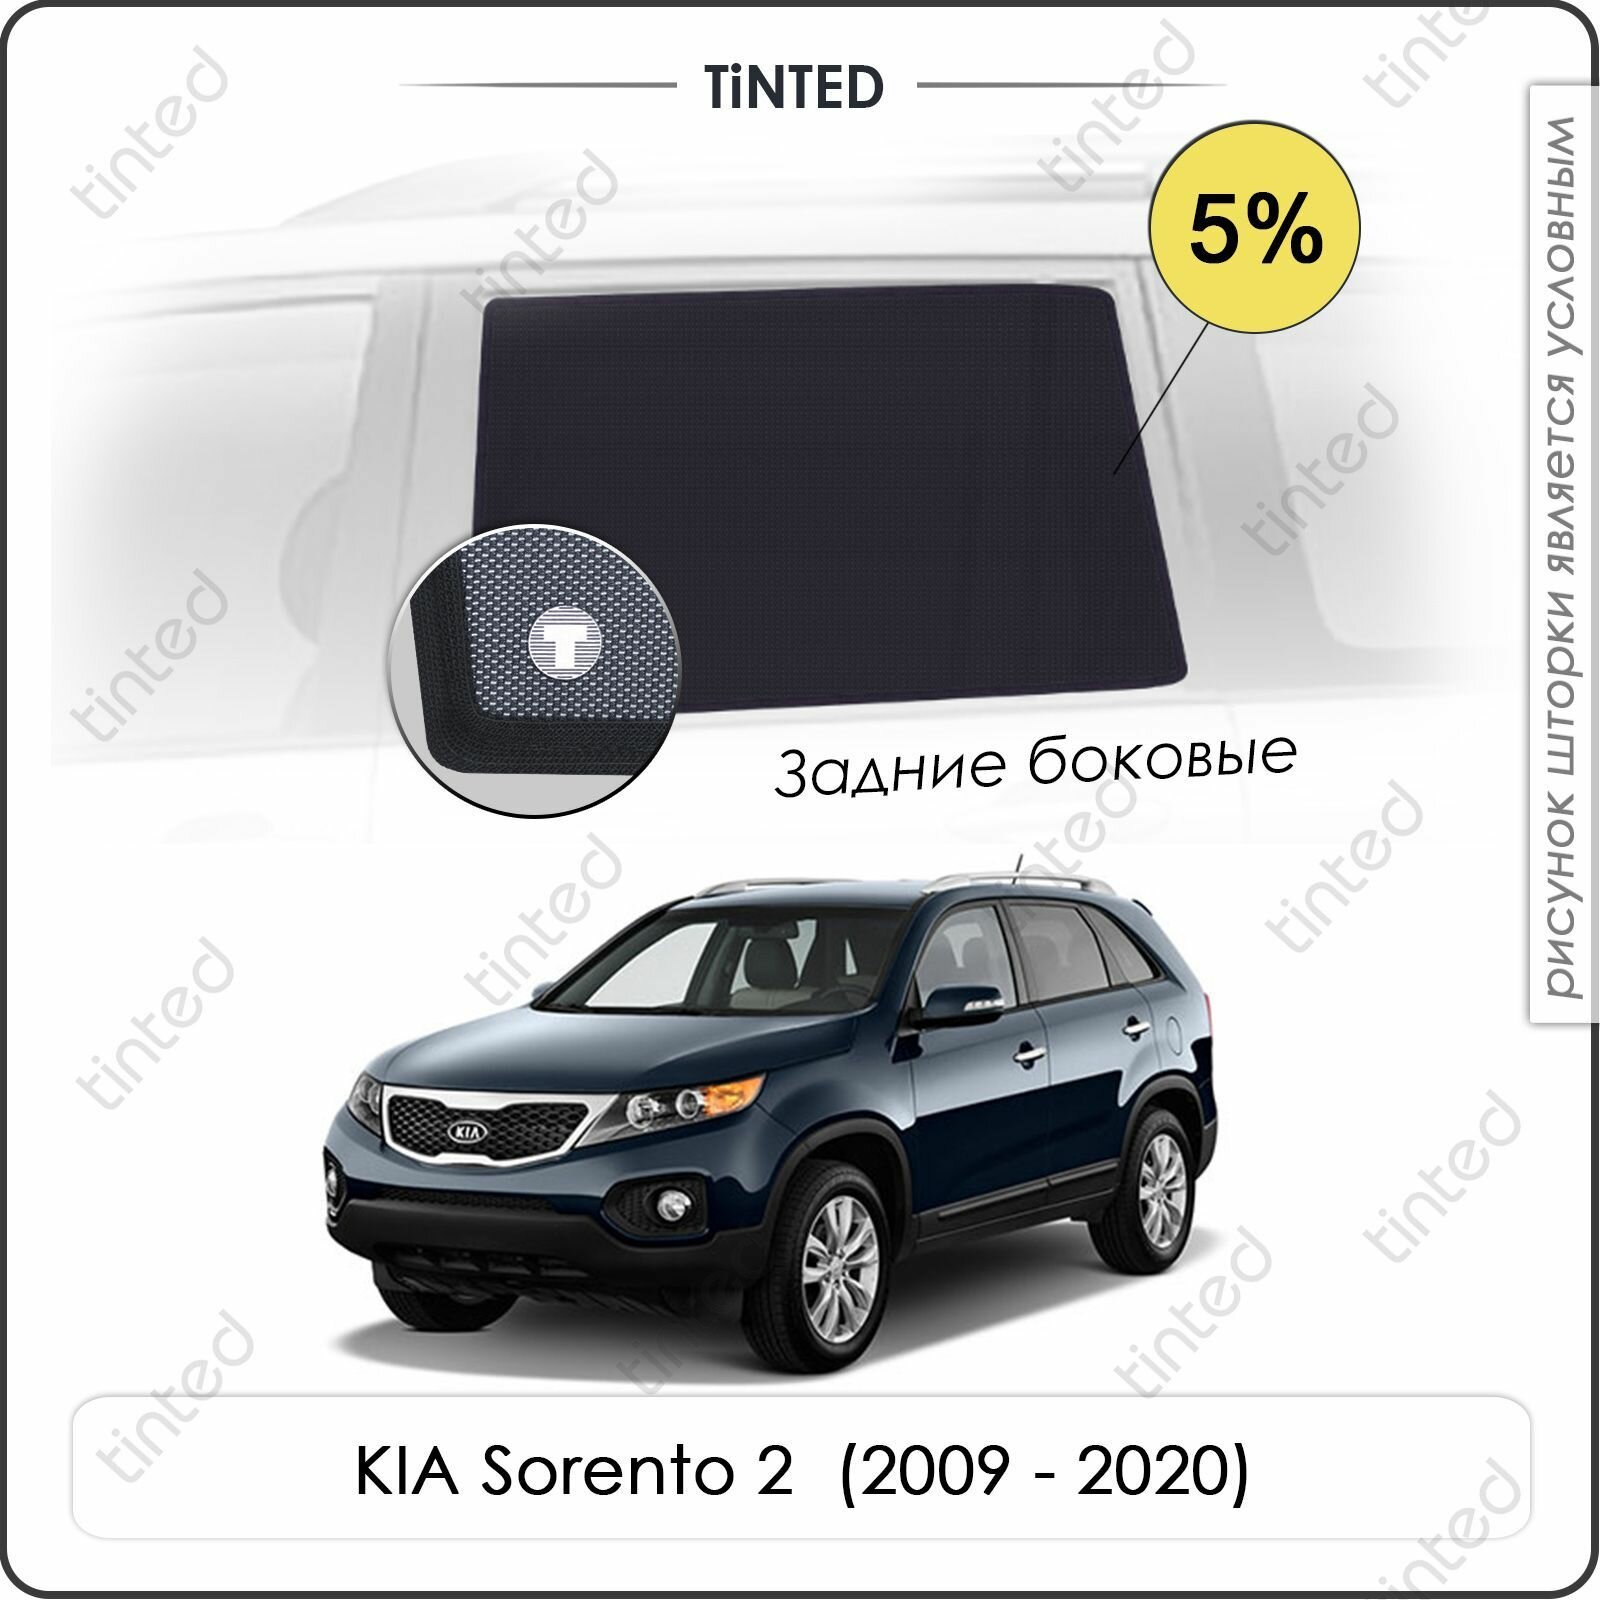 Шторки на автомобиль солнцезащитные KIA Sorento 2 Кроссовер 5дв. (2009 - 2021) на задние двери 5% сетки от солнца в машину КИА соренто Каркасные автошторки Premium